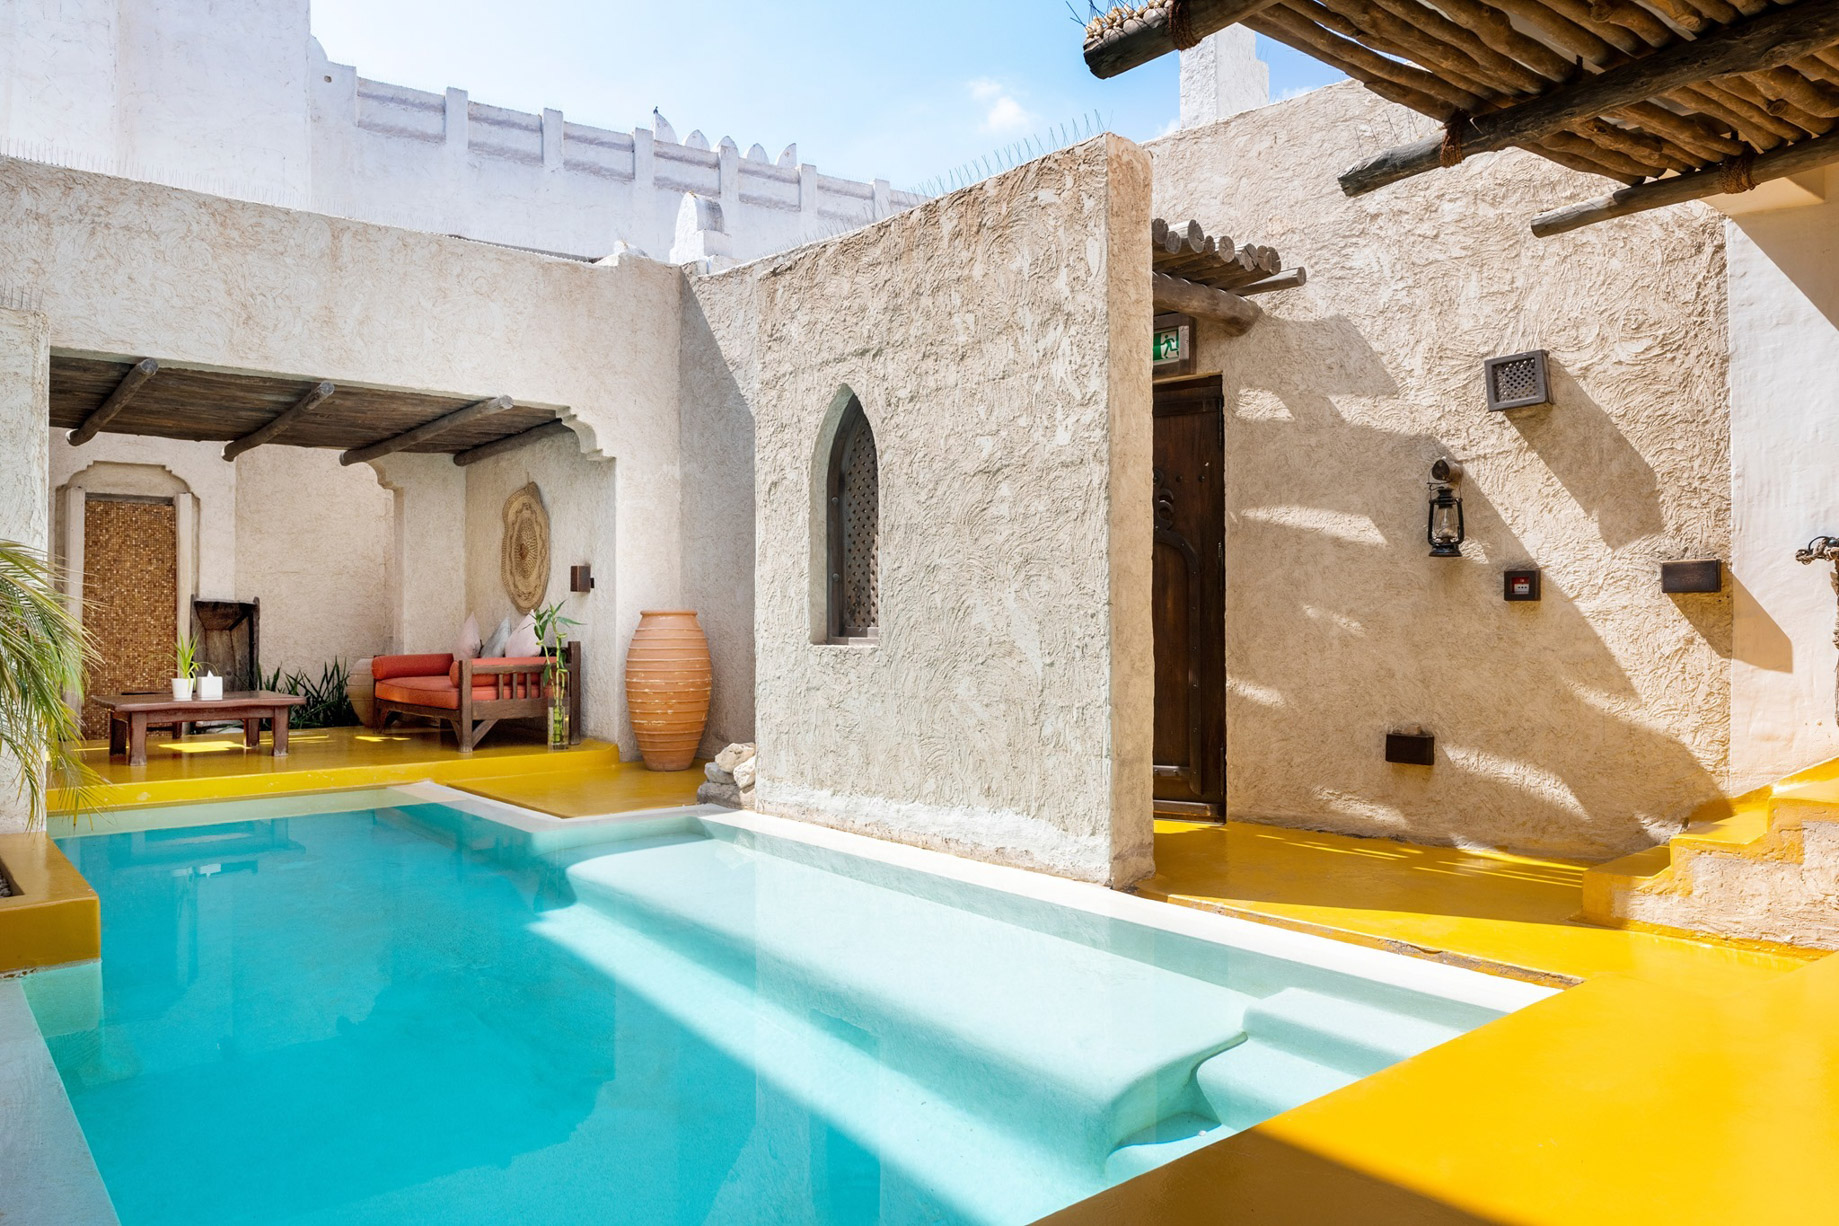 Sharq Village & Spa, A Ritz-Carlton Hotel – Doha, Qatar – Spa Private Pool